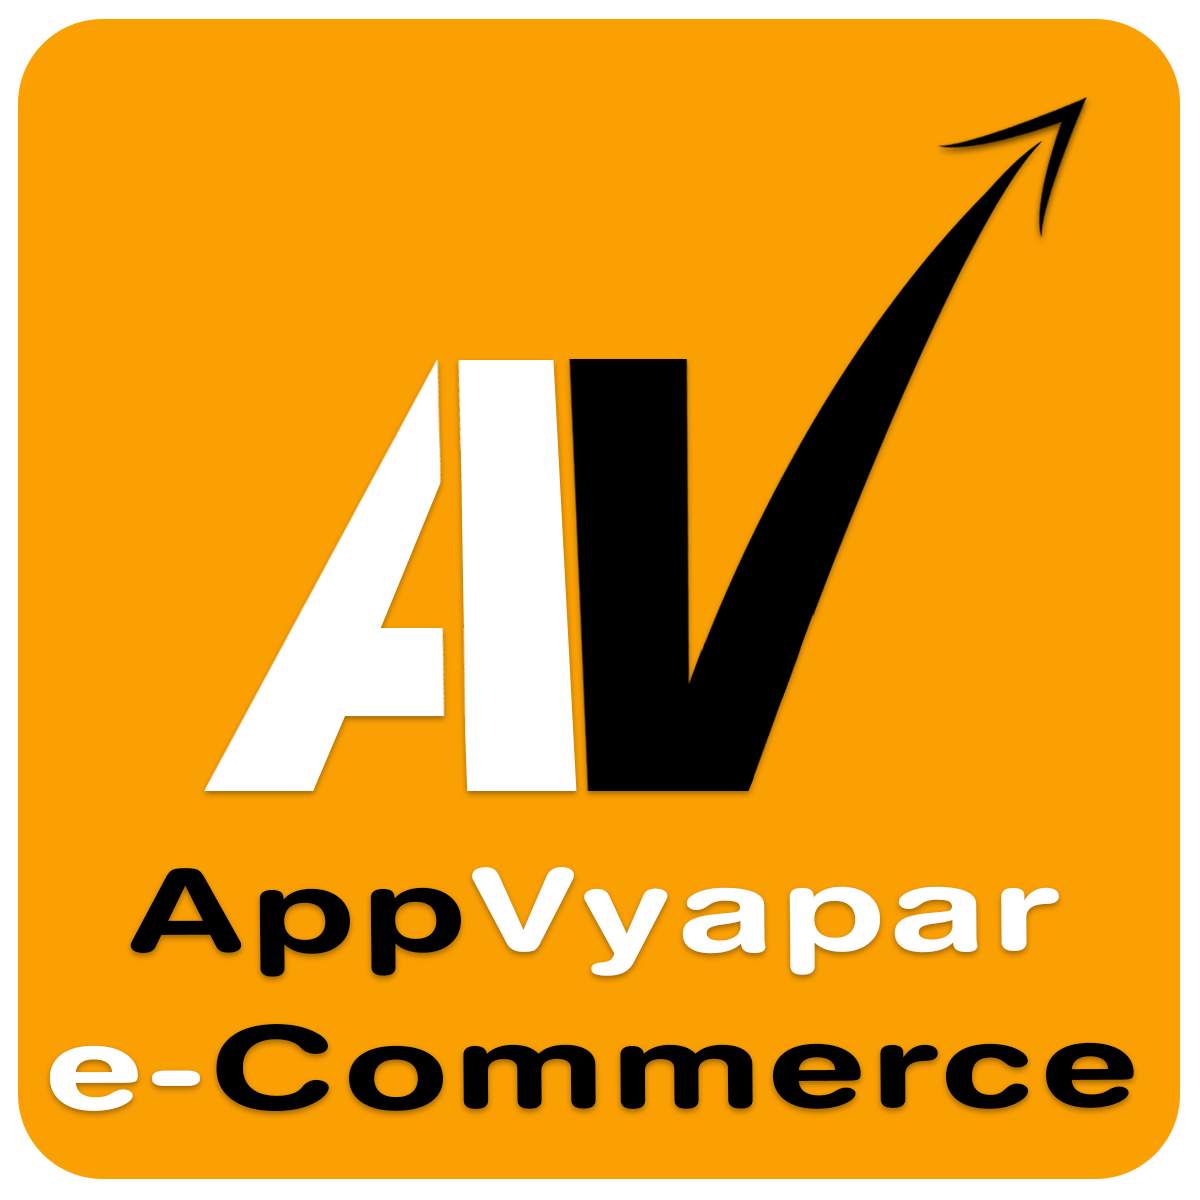 AppVyapar eCommerce